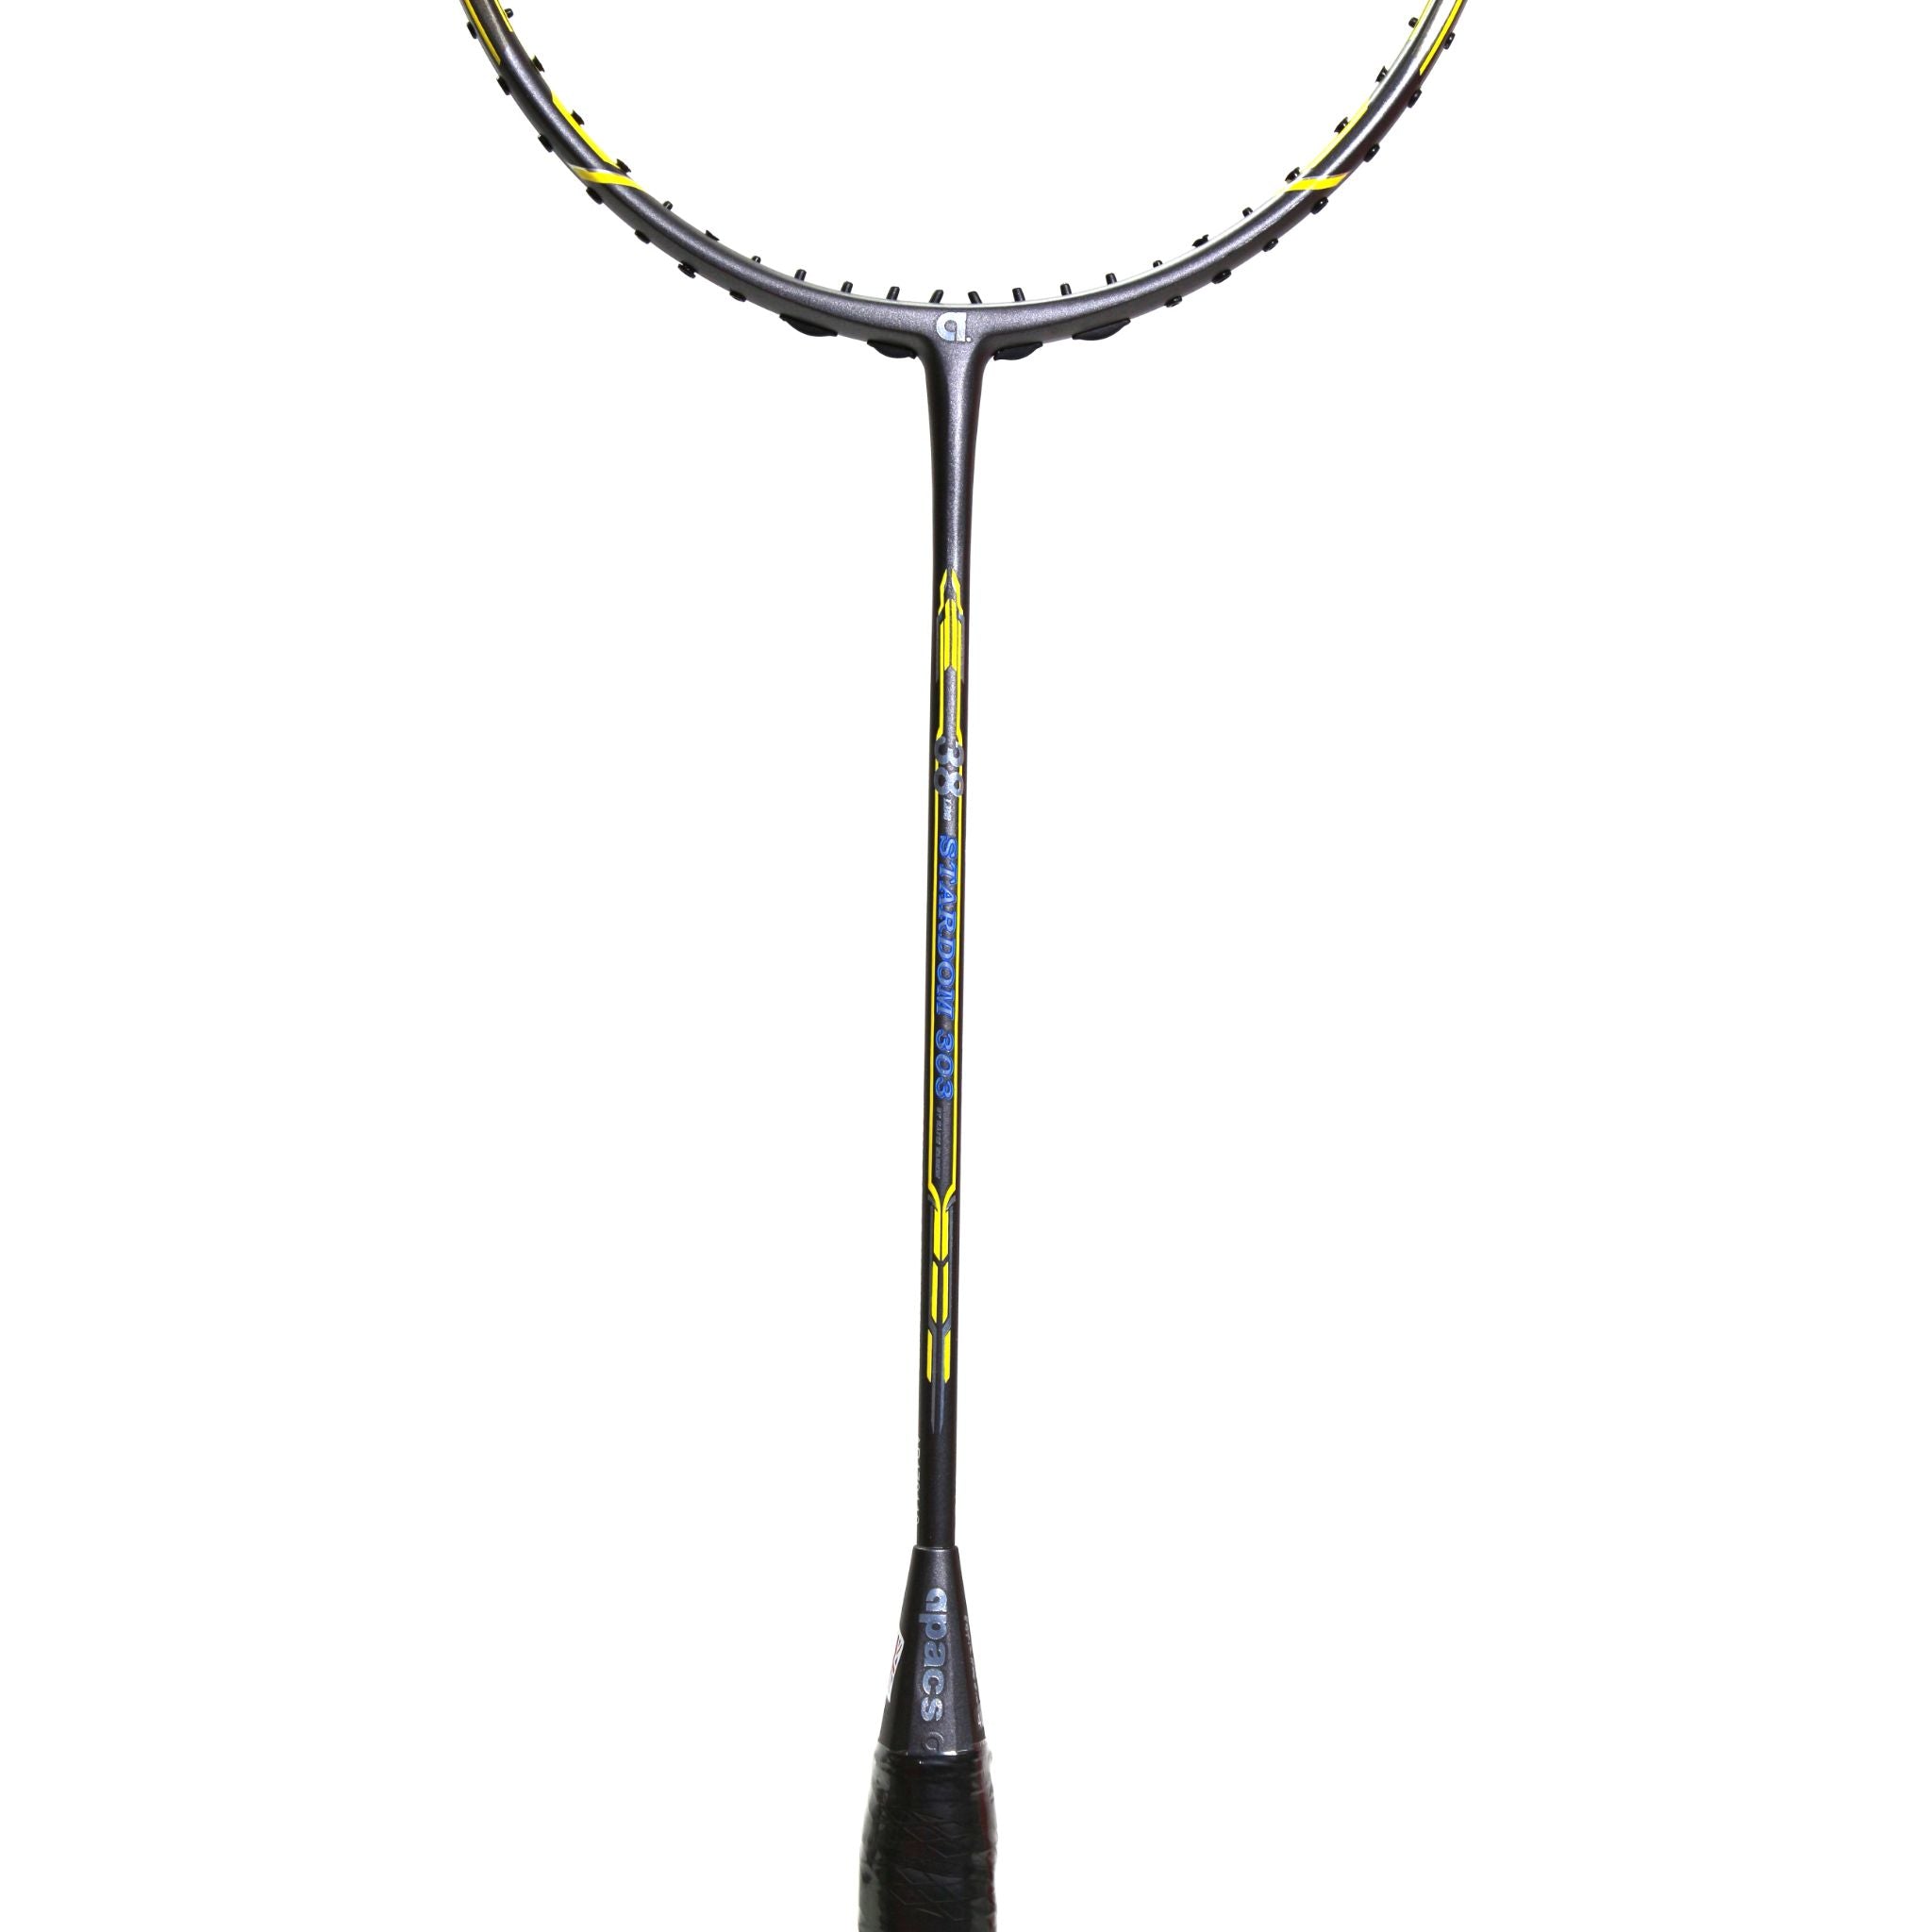 APACS Stardom 303 Badminton Racket